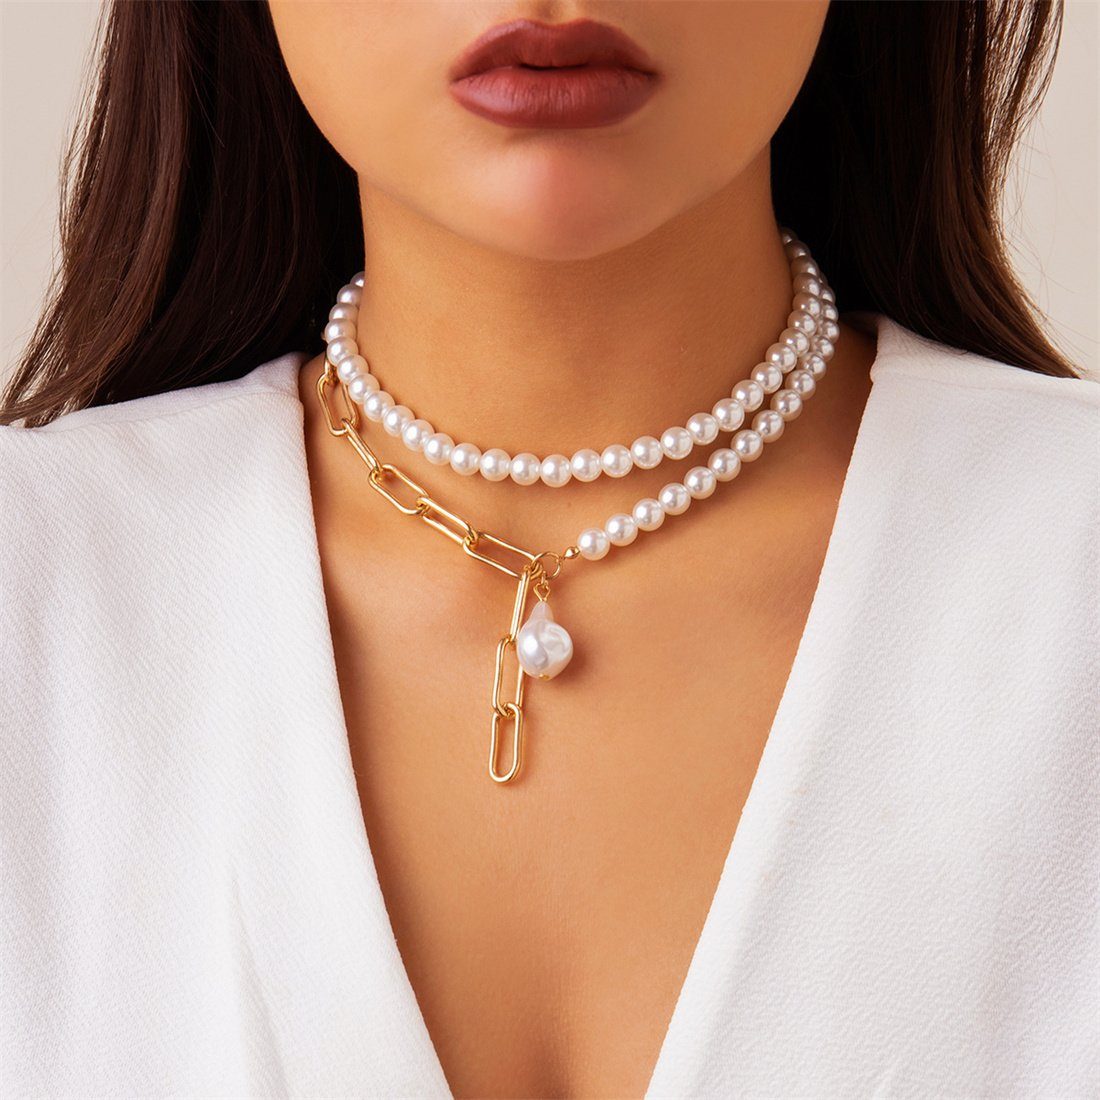 DÖRÖY Choker-Set Damen Vintage faux Perle Halskette Set,böhmische Halskette mit Zubehör